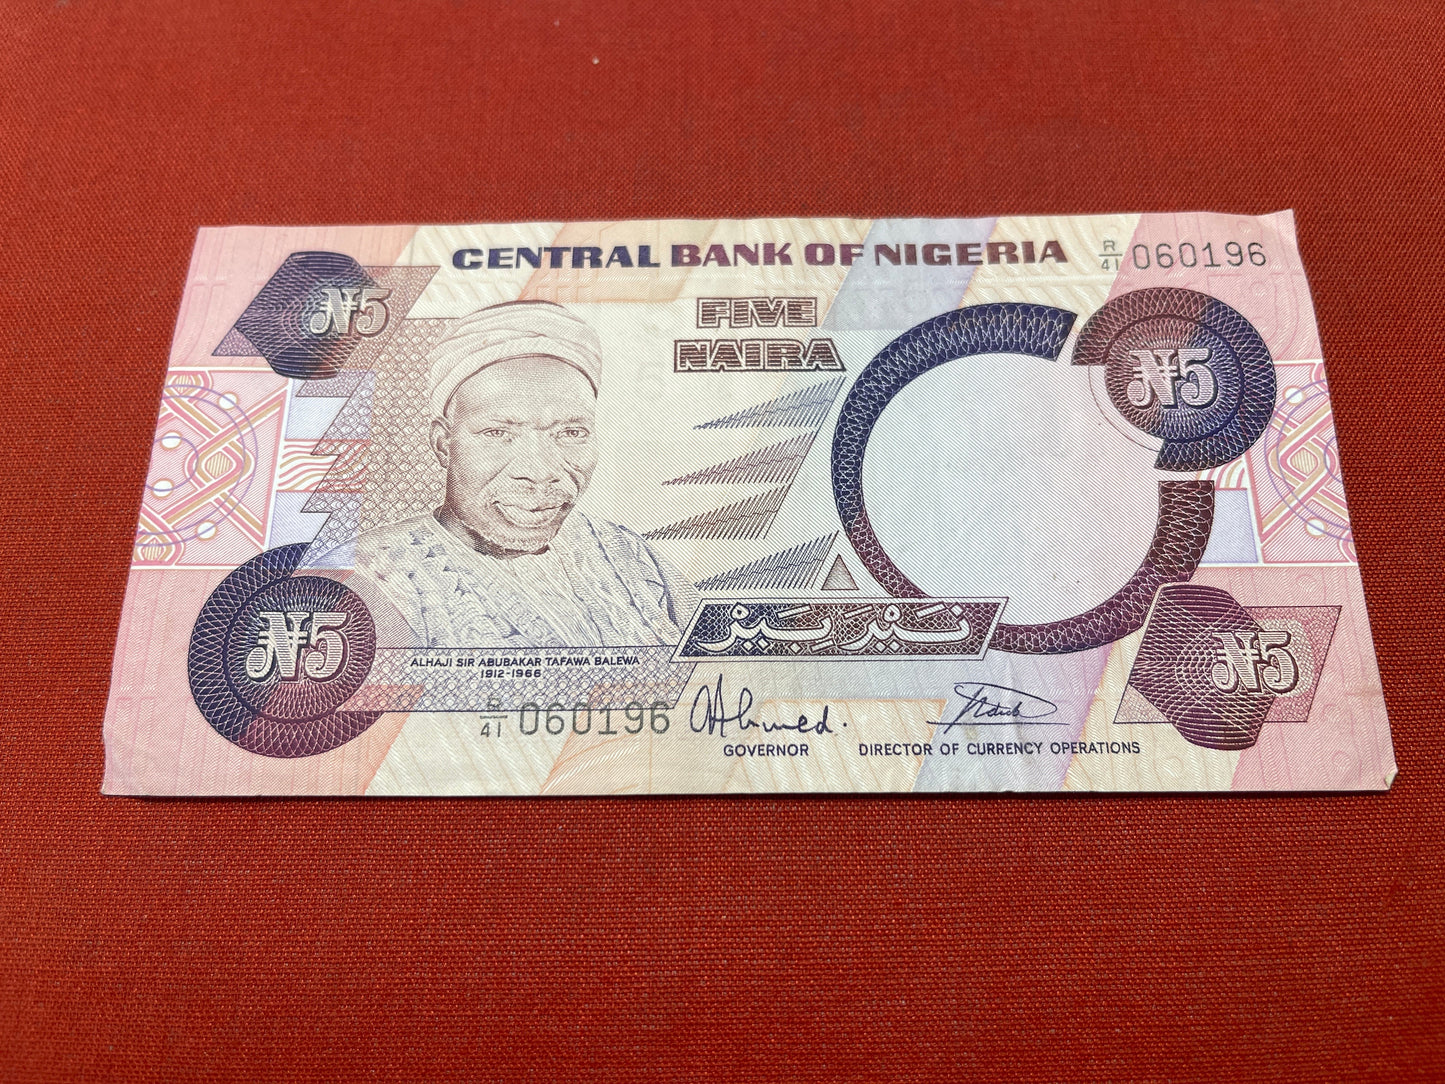 Central Bank of Nigeria 5 Naira Serial 060196 